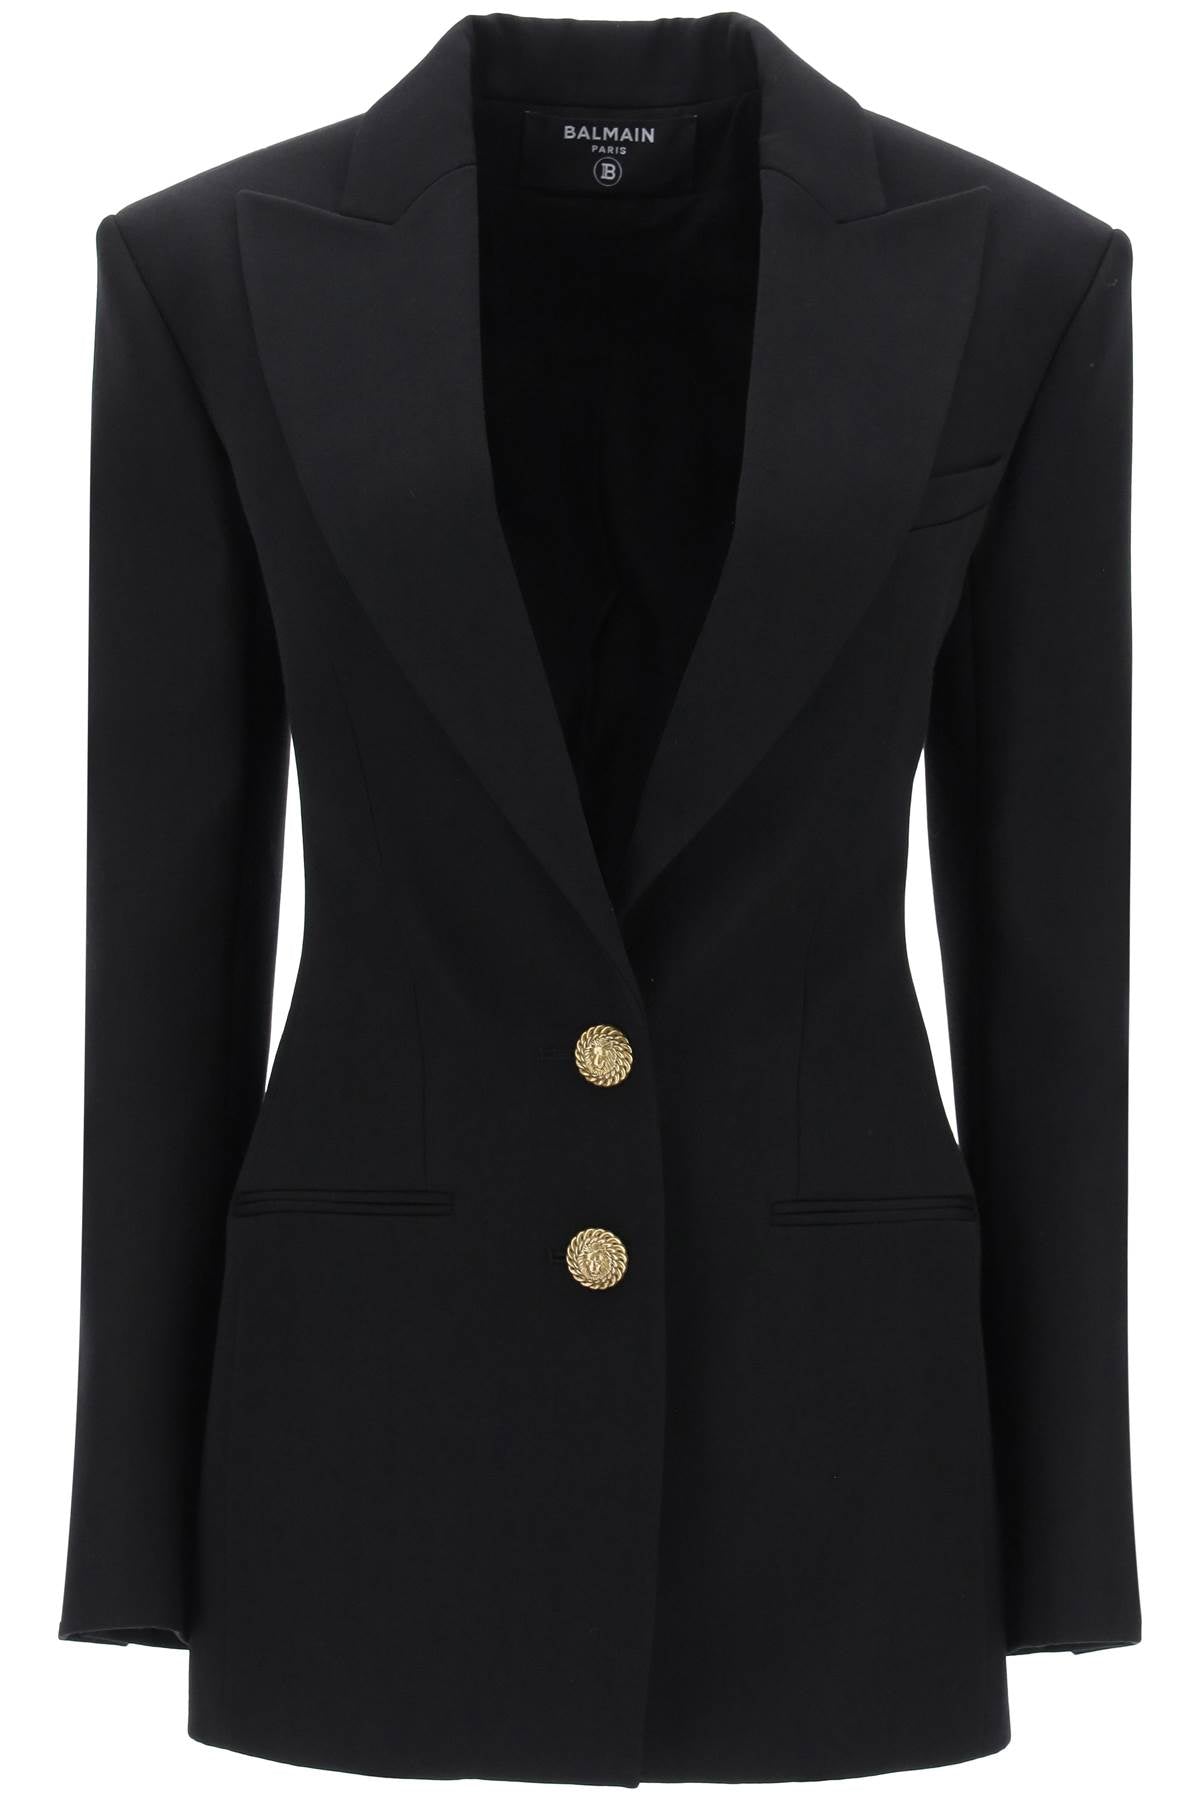 女士豪華黑色羊毛外套- 高品質單排扣外套配有精緻的金色獅頭扣子，修身剪裁和結構化肩膀